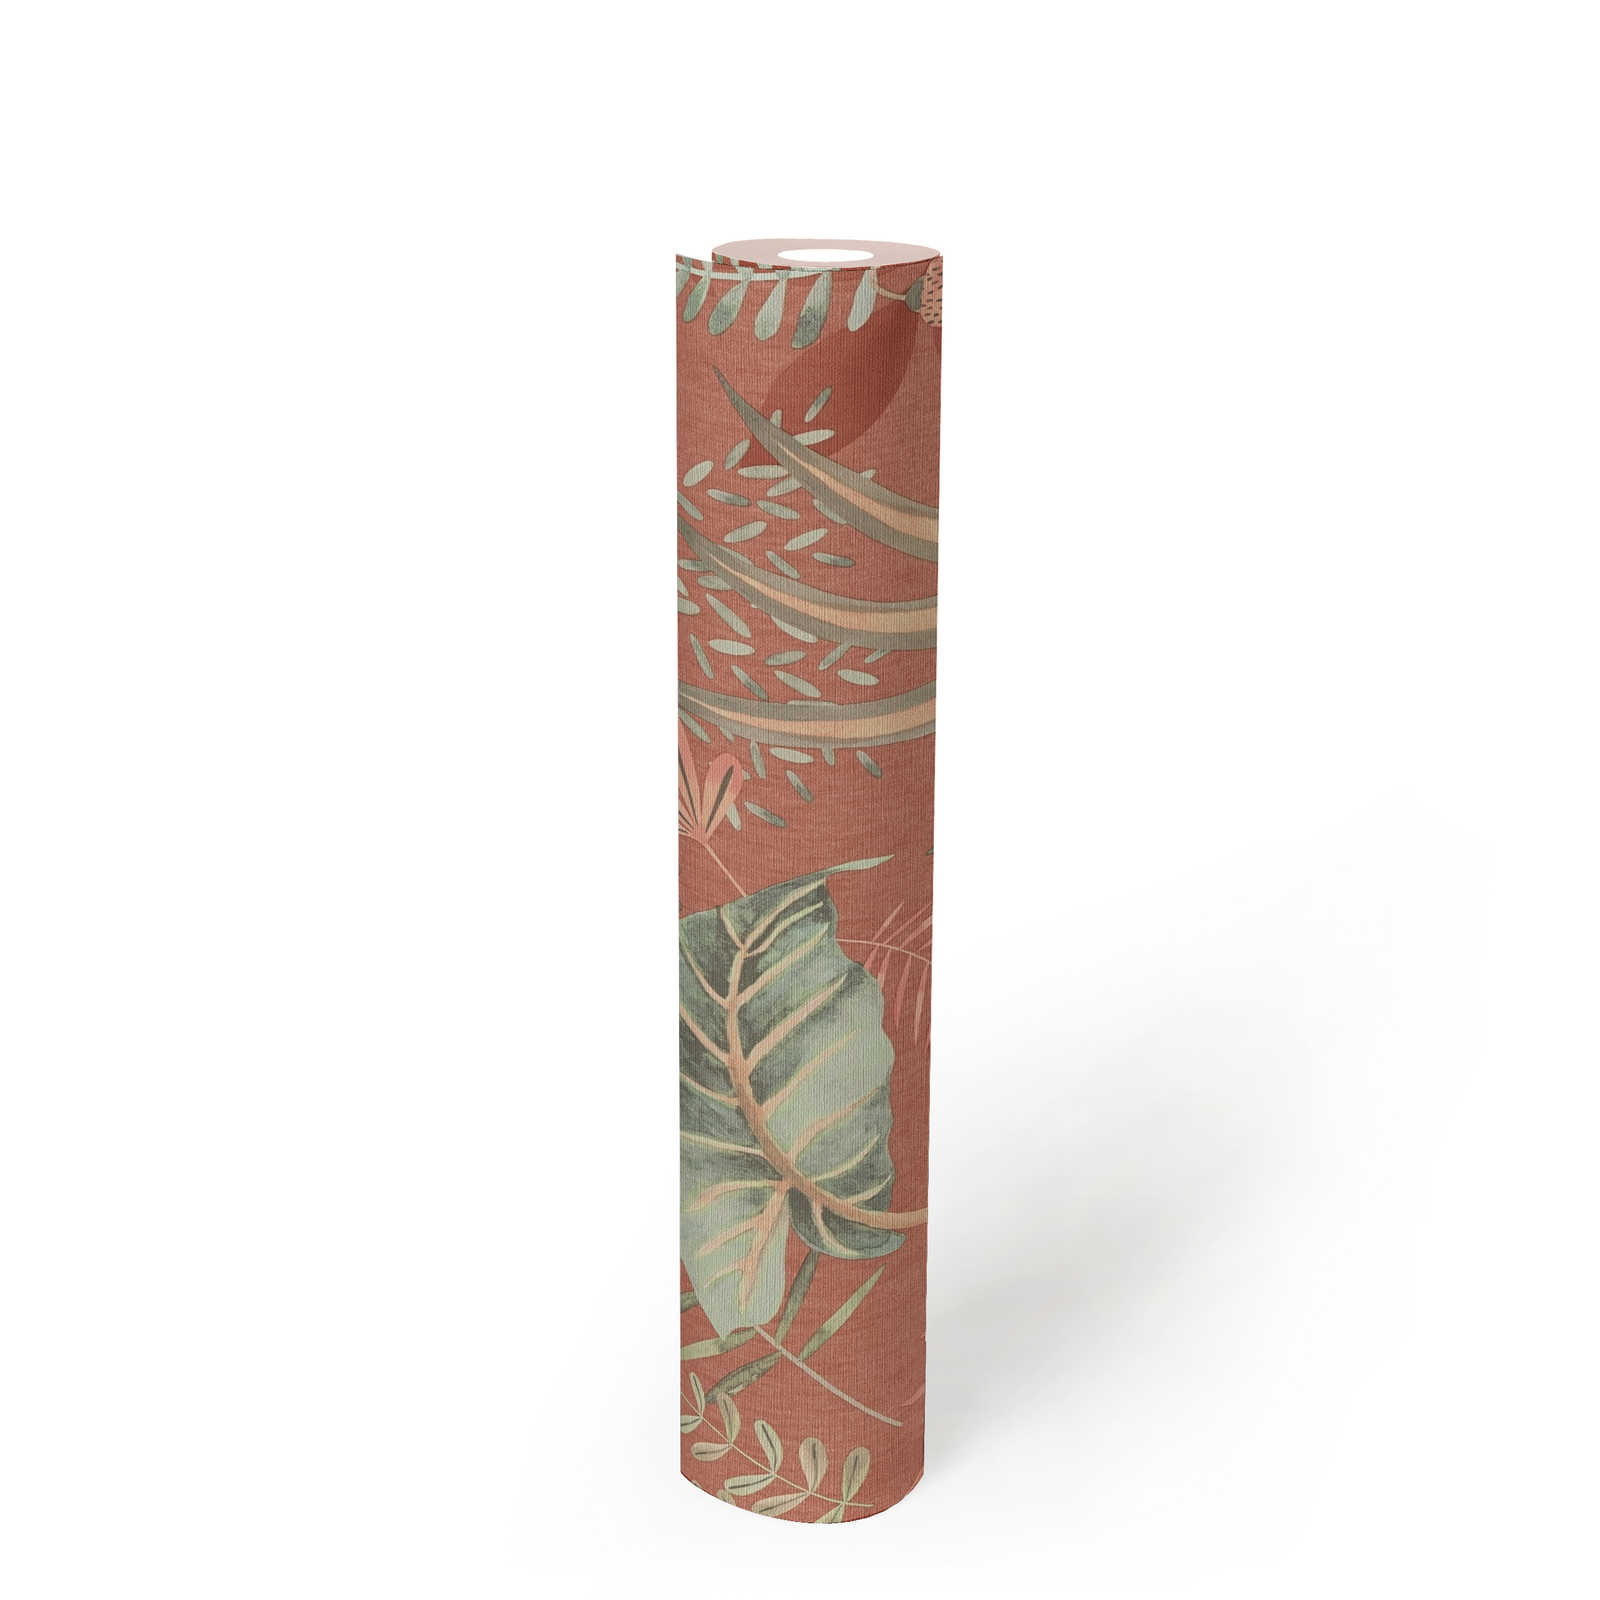             papier peint en papier floral avec des feuilles mélangées légèrement structuré, mat - rouge, orange, vert
        